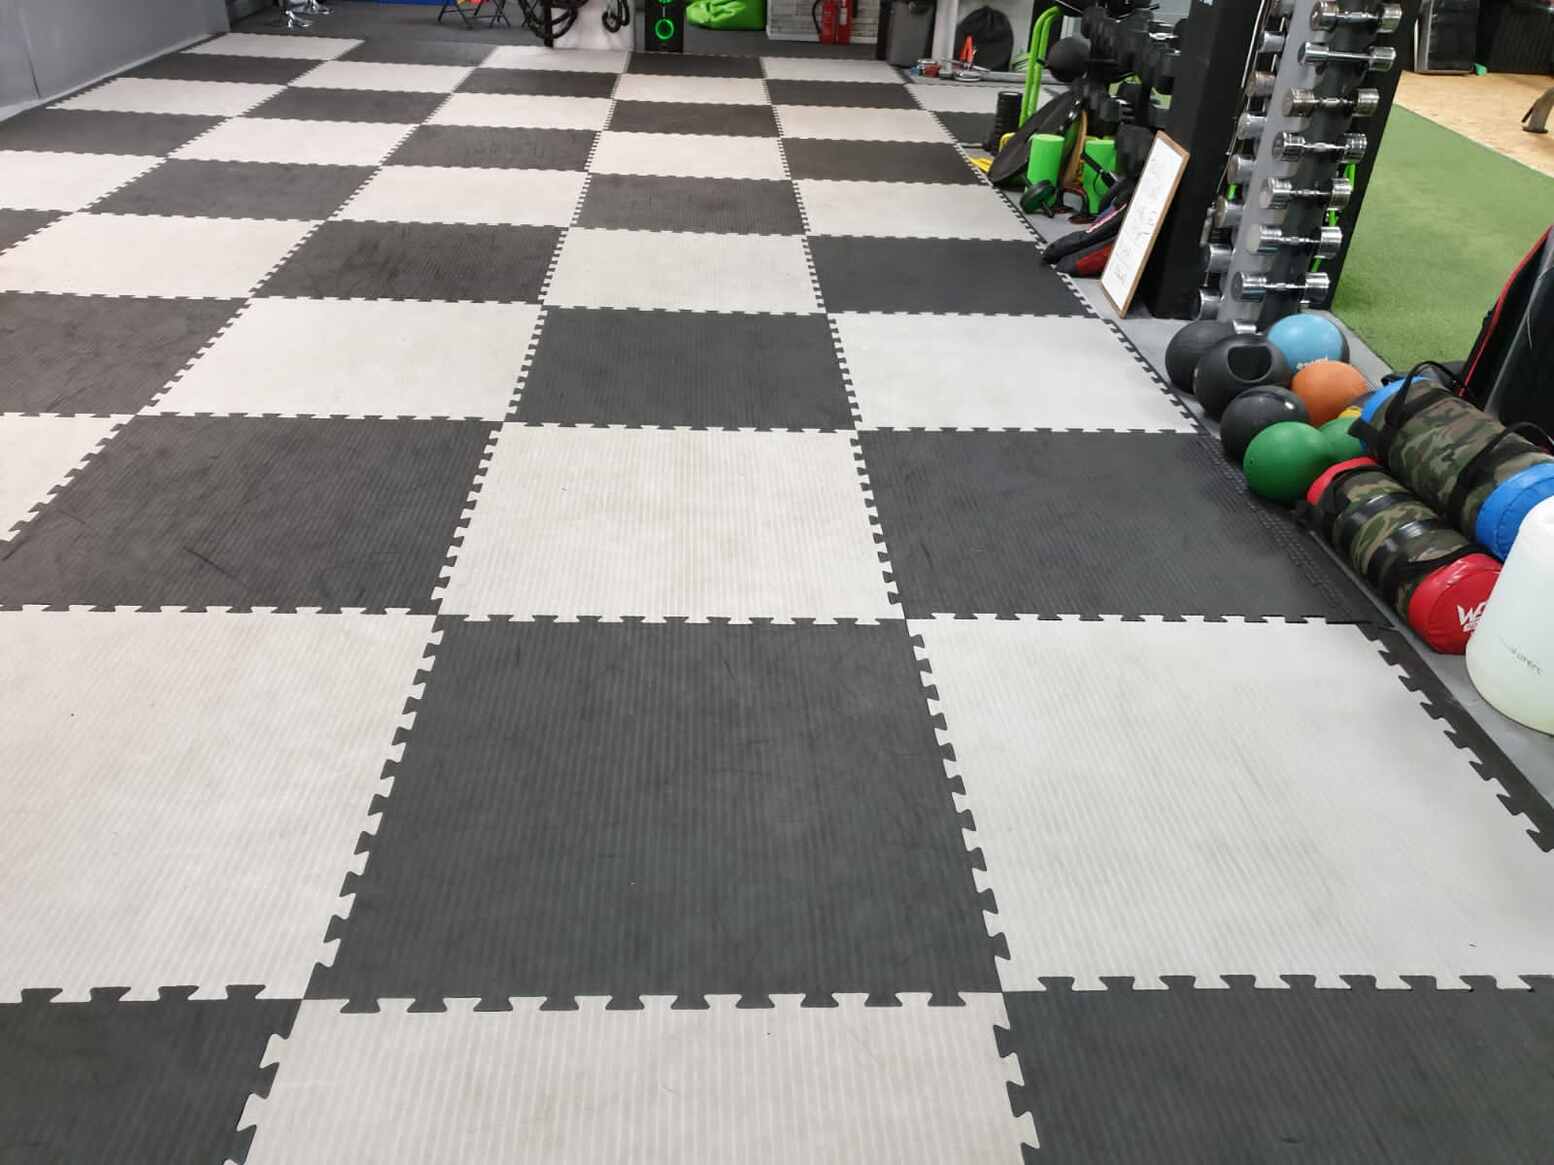 Clean gym floor